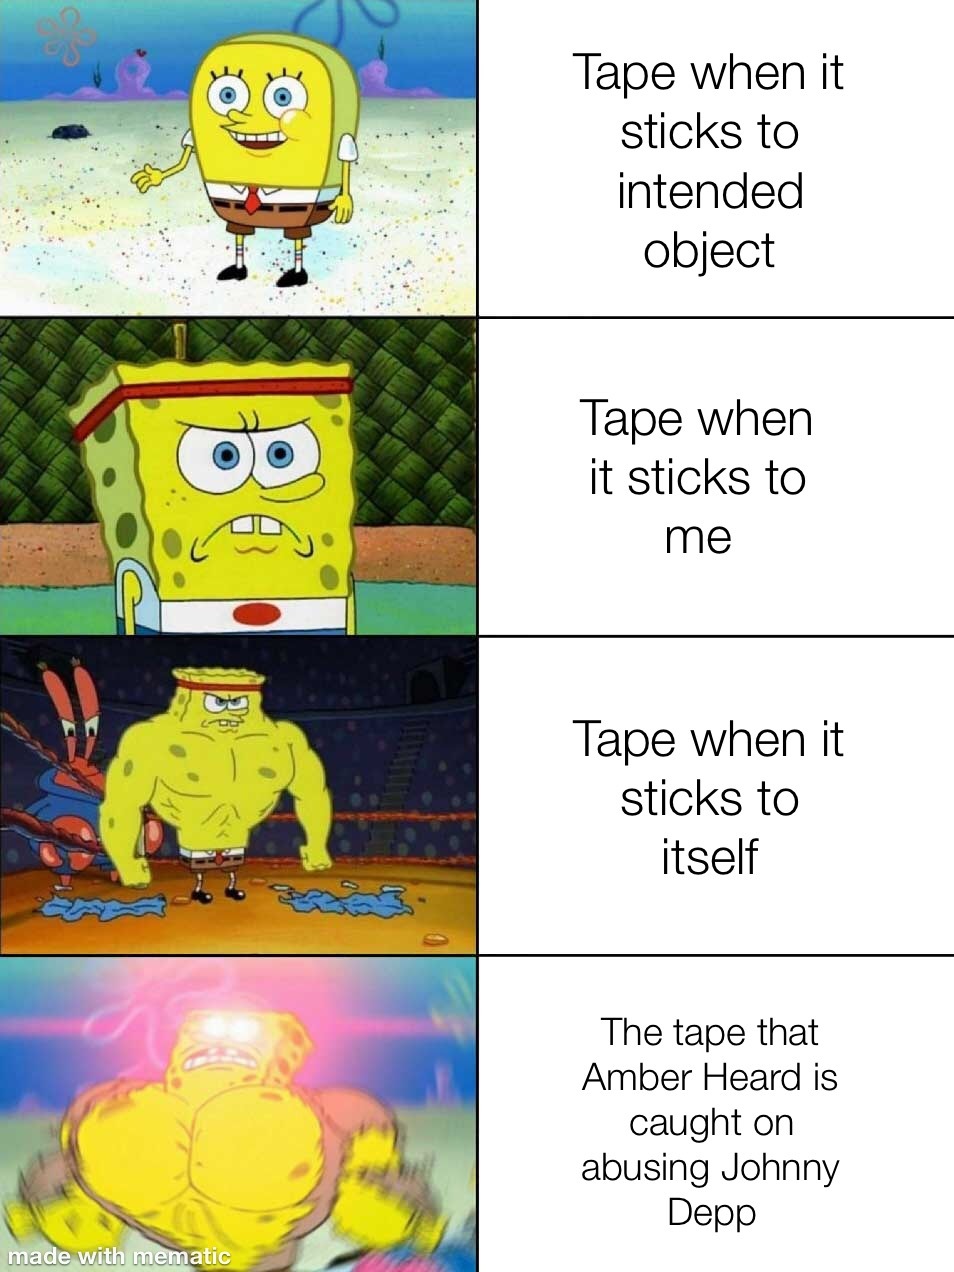 All my homies hate tape - meme